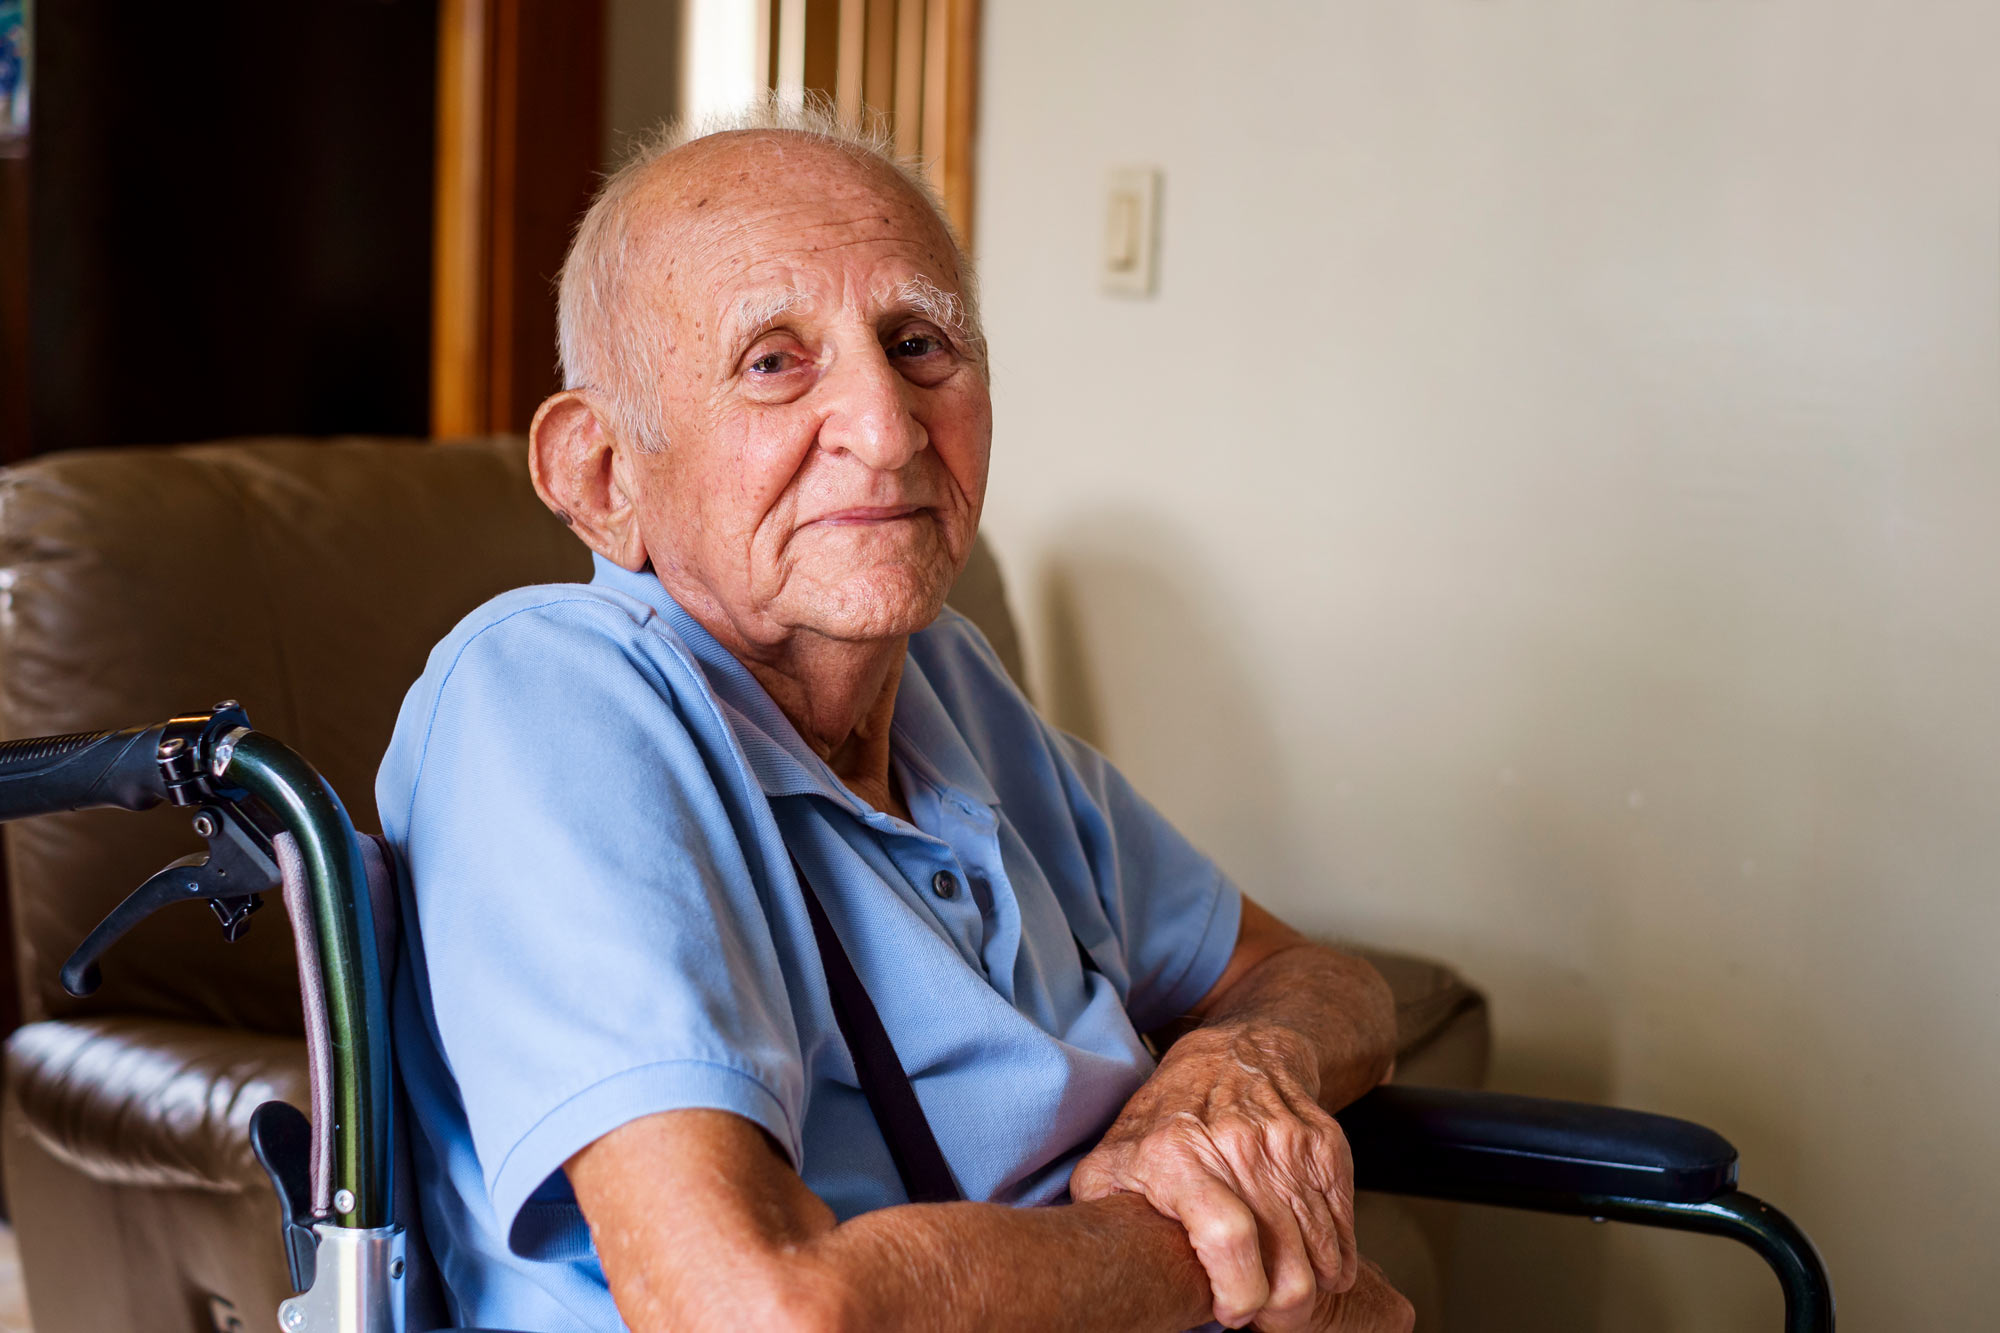 Apteekeilla merkittävä rooli kotihoidon piirissä olevien iäkkäiden lääkitysturvallisuuden parantamisessa